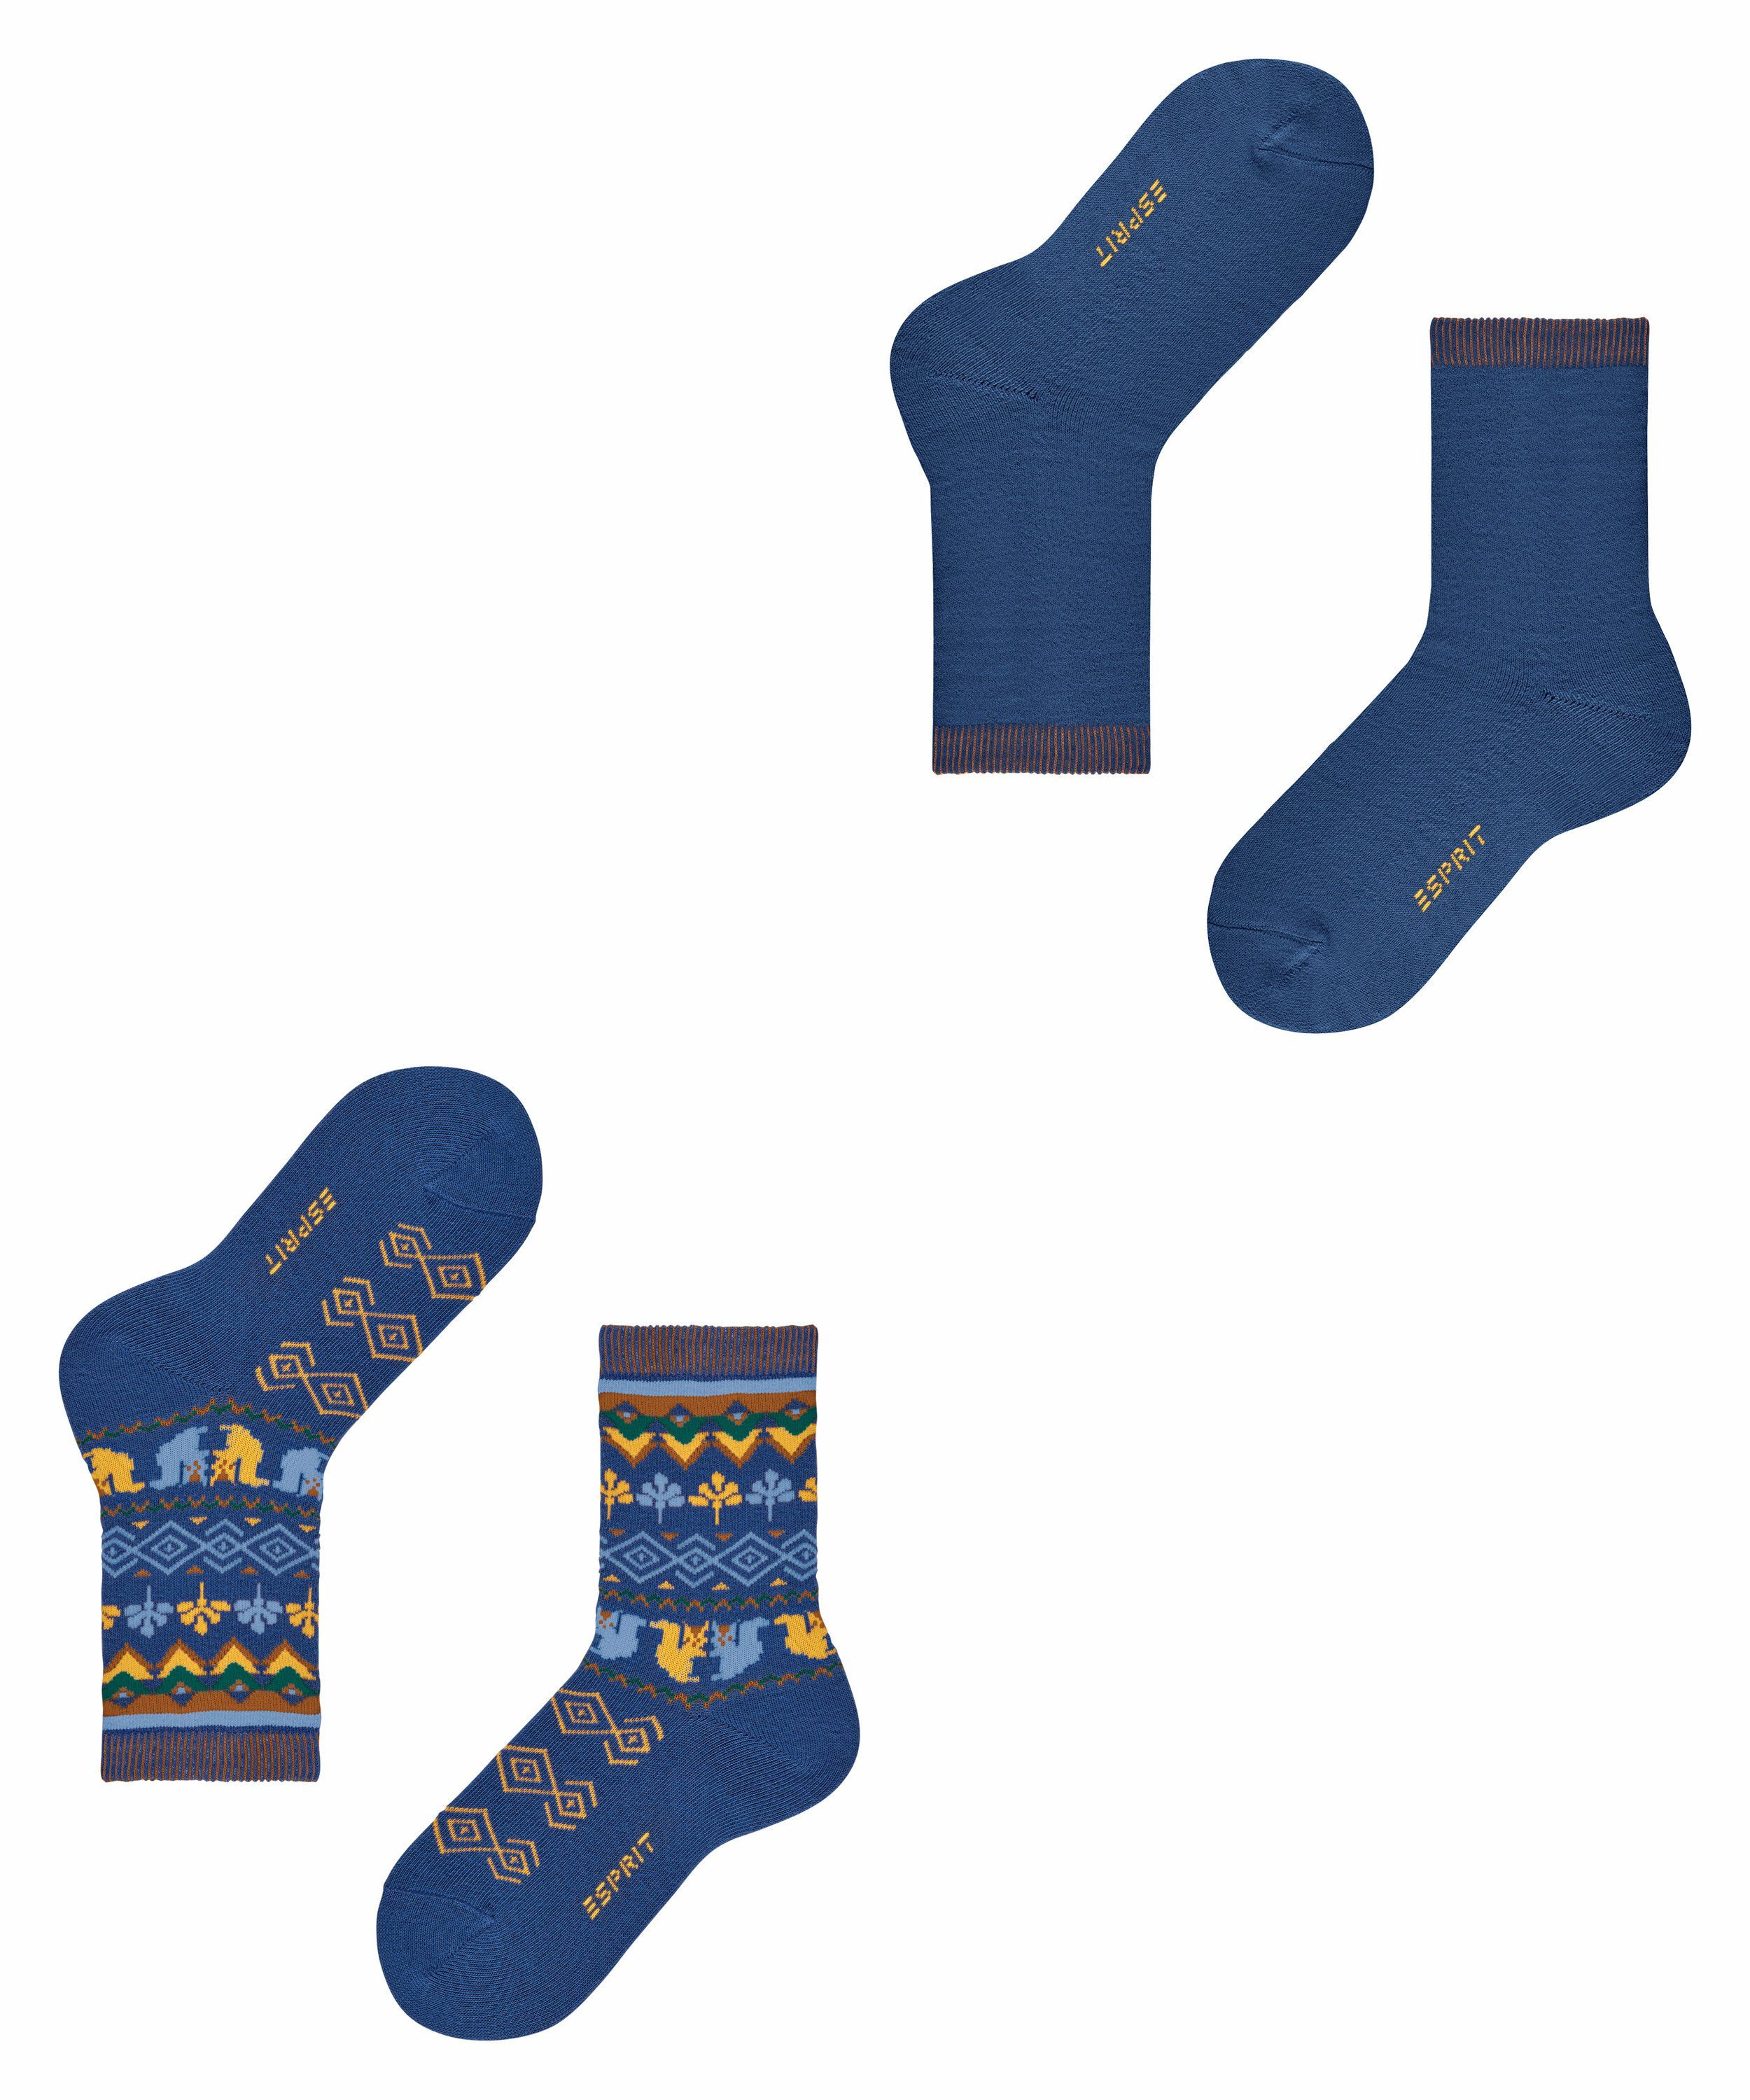 Esprit Socken Nordic 2-Pack (2-Paar) blue royal (6051)